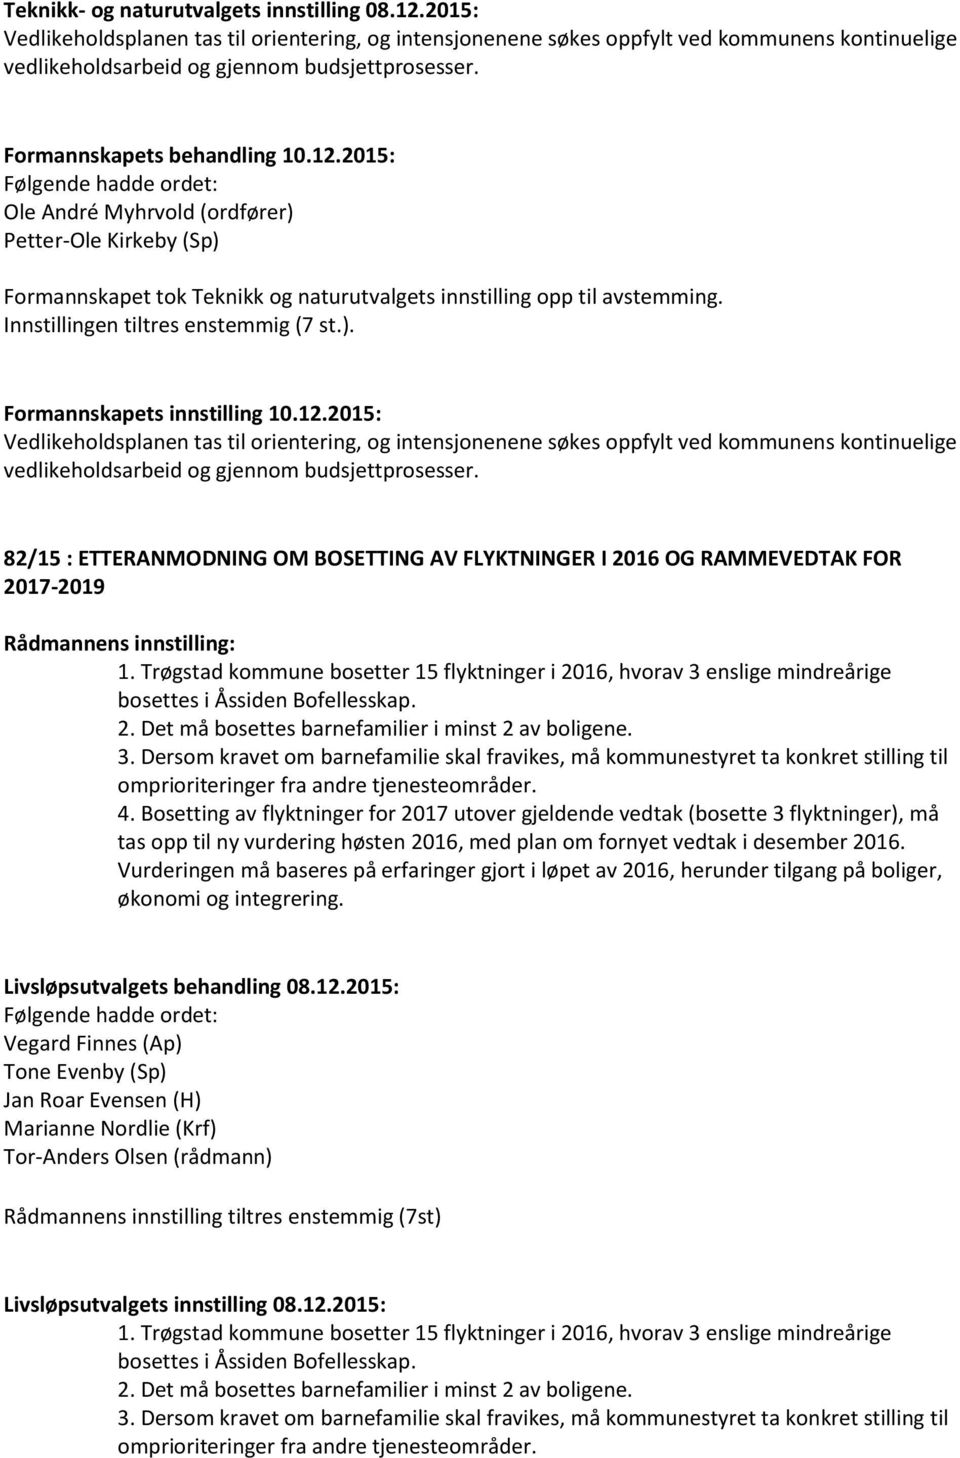 82/15 : ETTERANMODNING OM BOSETTING AV FLYKTNINGER I 2016 OG RAMMEVEDTAK FOR 2017-2019 1. Trøgstad kommune bosetter 15 flyktninger i 2016, hvorav 3 enslige mindreårige bosettes i Åssiden Bofellesskap.